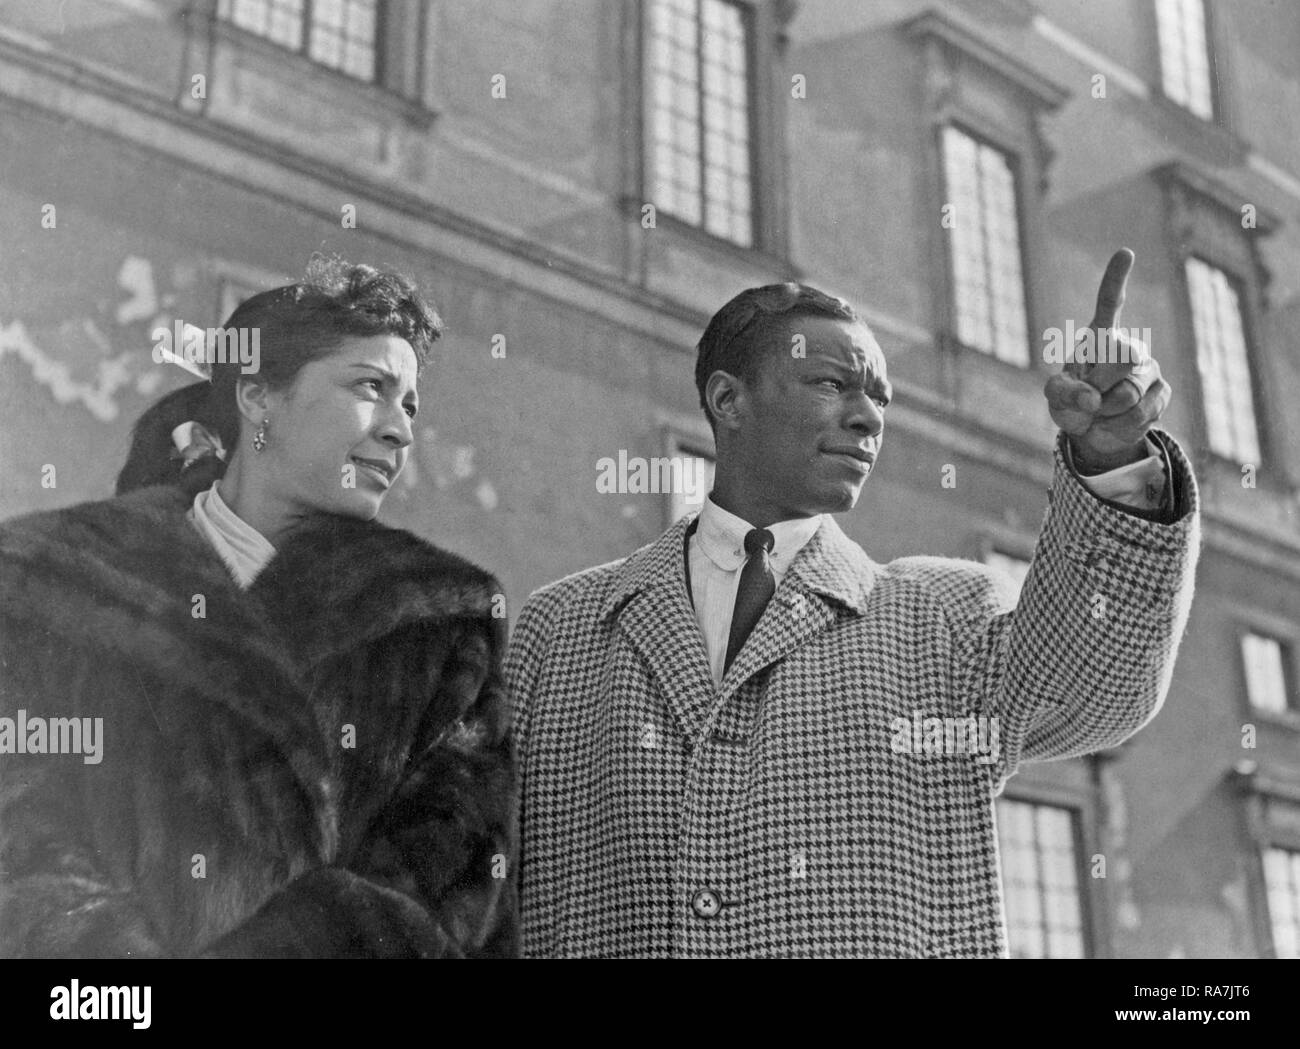 Nat King Cole. 17. März 1919 - 15. Februar 1965. Amerikanischer Jazzpianist und Sänger. Hier bei einem Besuch in Stockholm Schweden 1954 bei einem Auftritt. Zusammen mit seiner Frau Maria Cole besucht er die schwedische Hauptstadt und besucht das königliche Schloss. Foto Kristoffersson. Stockfoto